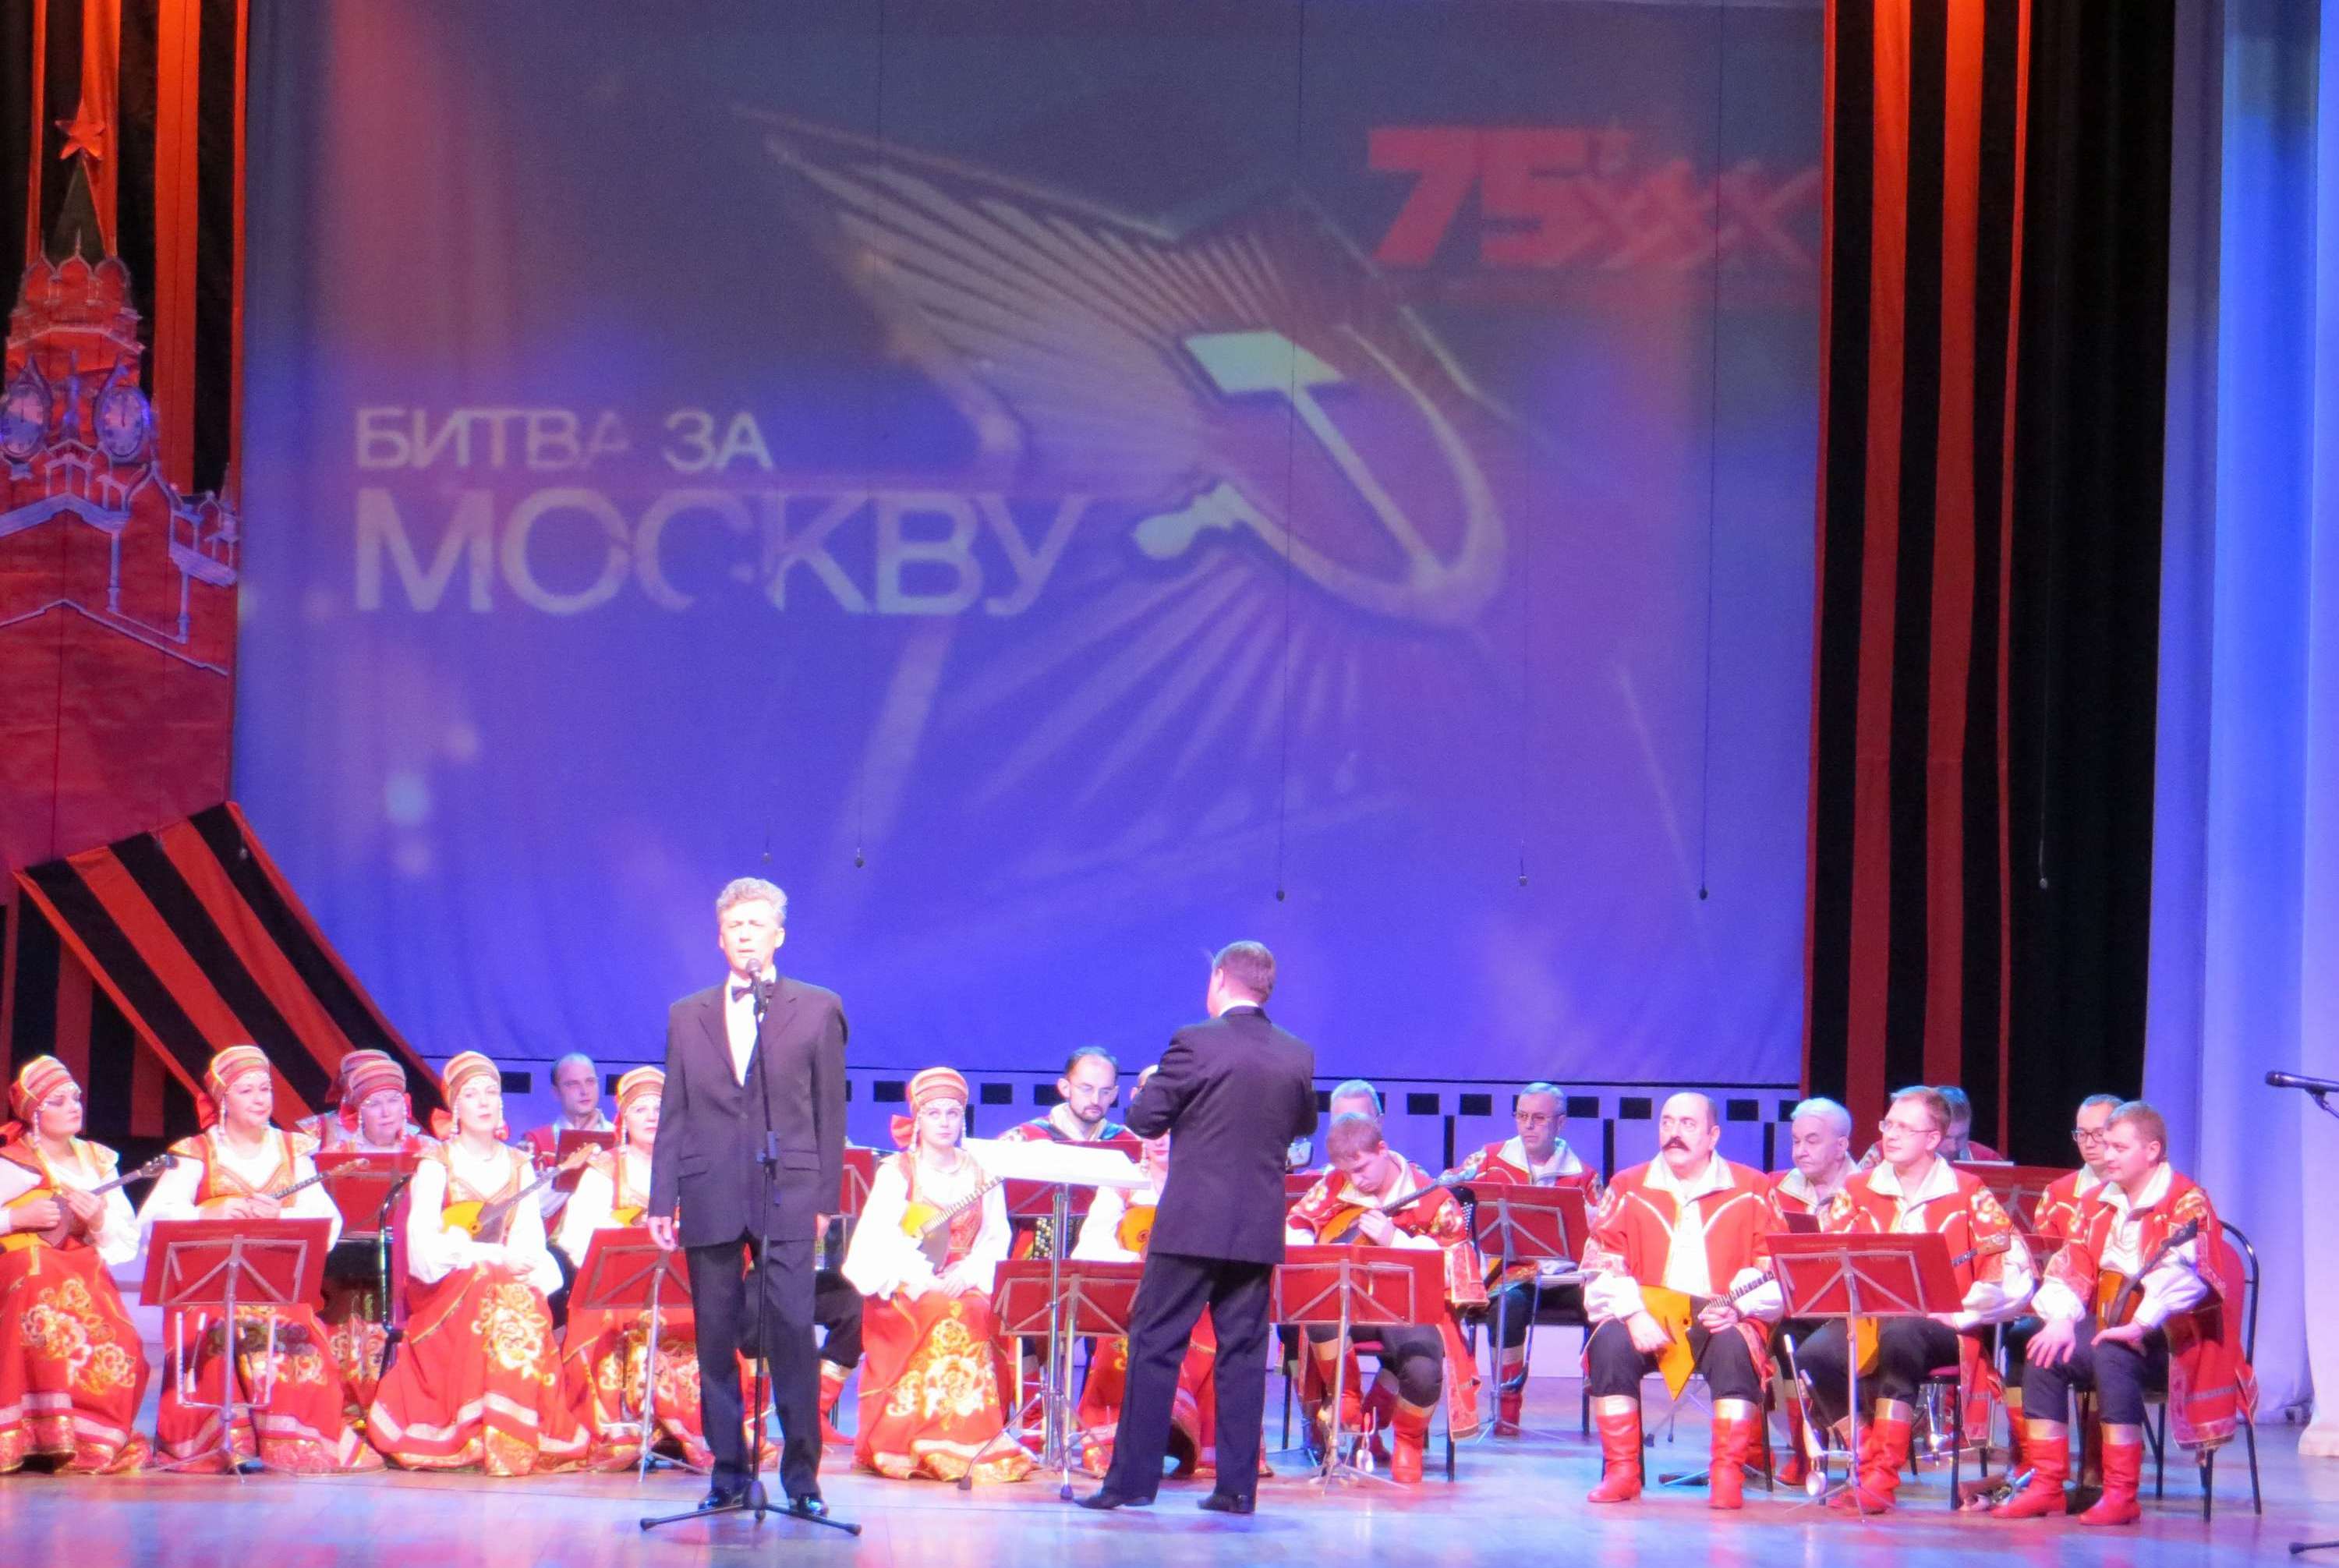 Концерт оркестра «Русские узоры» к 75-летию Битвы под Москвой